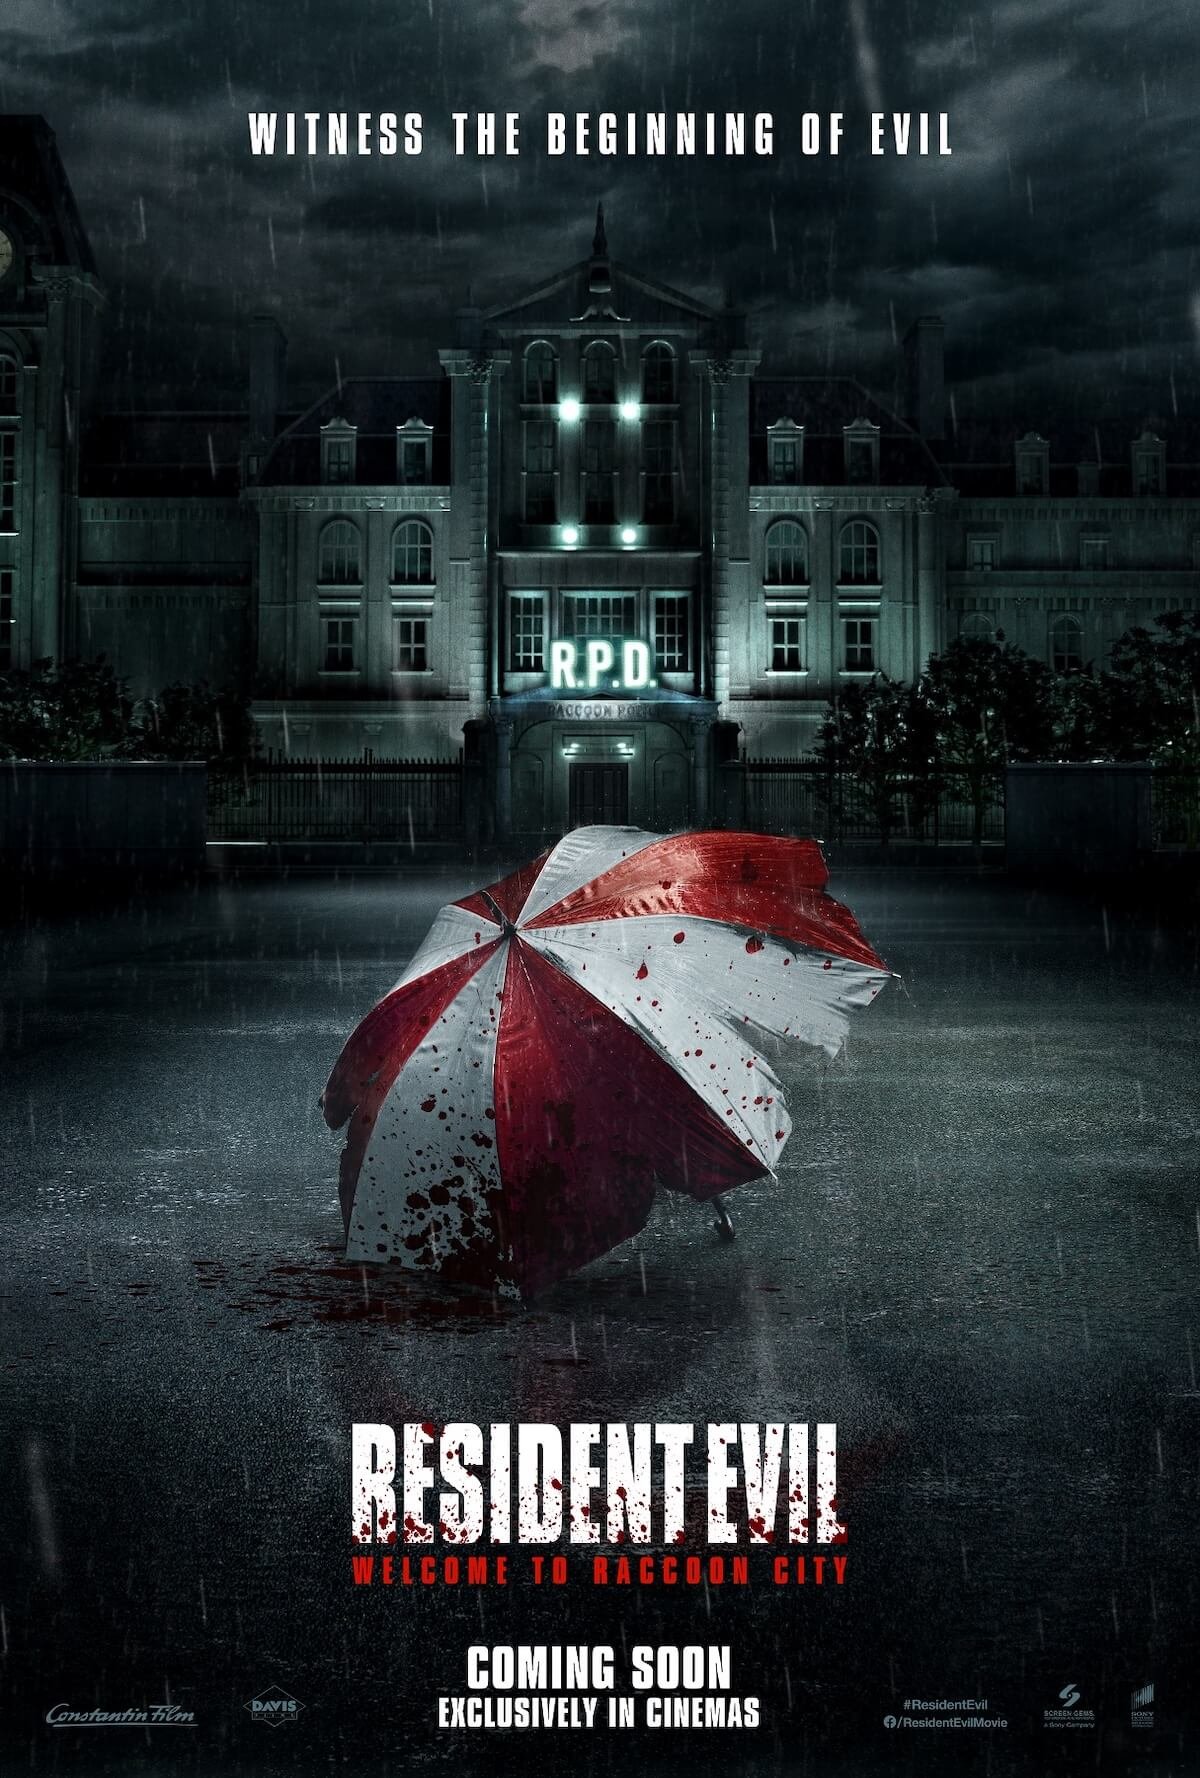 Resident Evil: Bem-vindo a Raccoon City | Sony Pictures divulga trailer do próximo filme Resident Evil com Robbie Amel